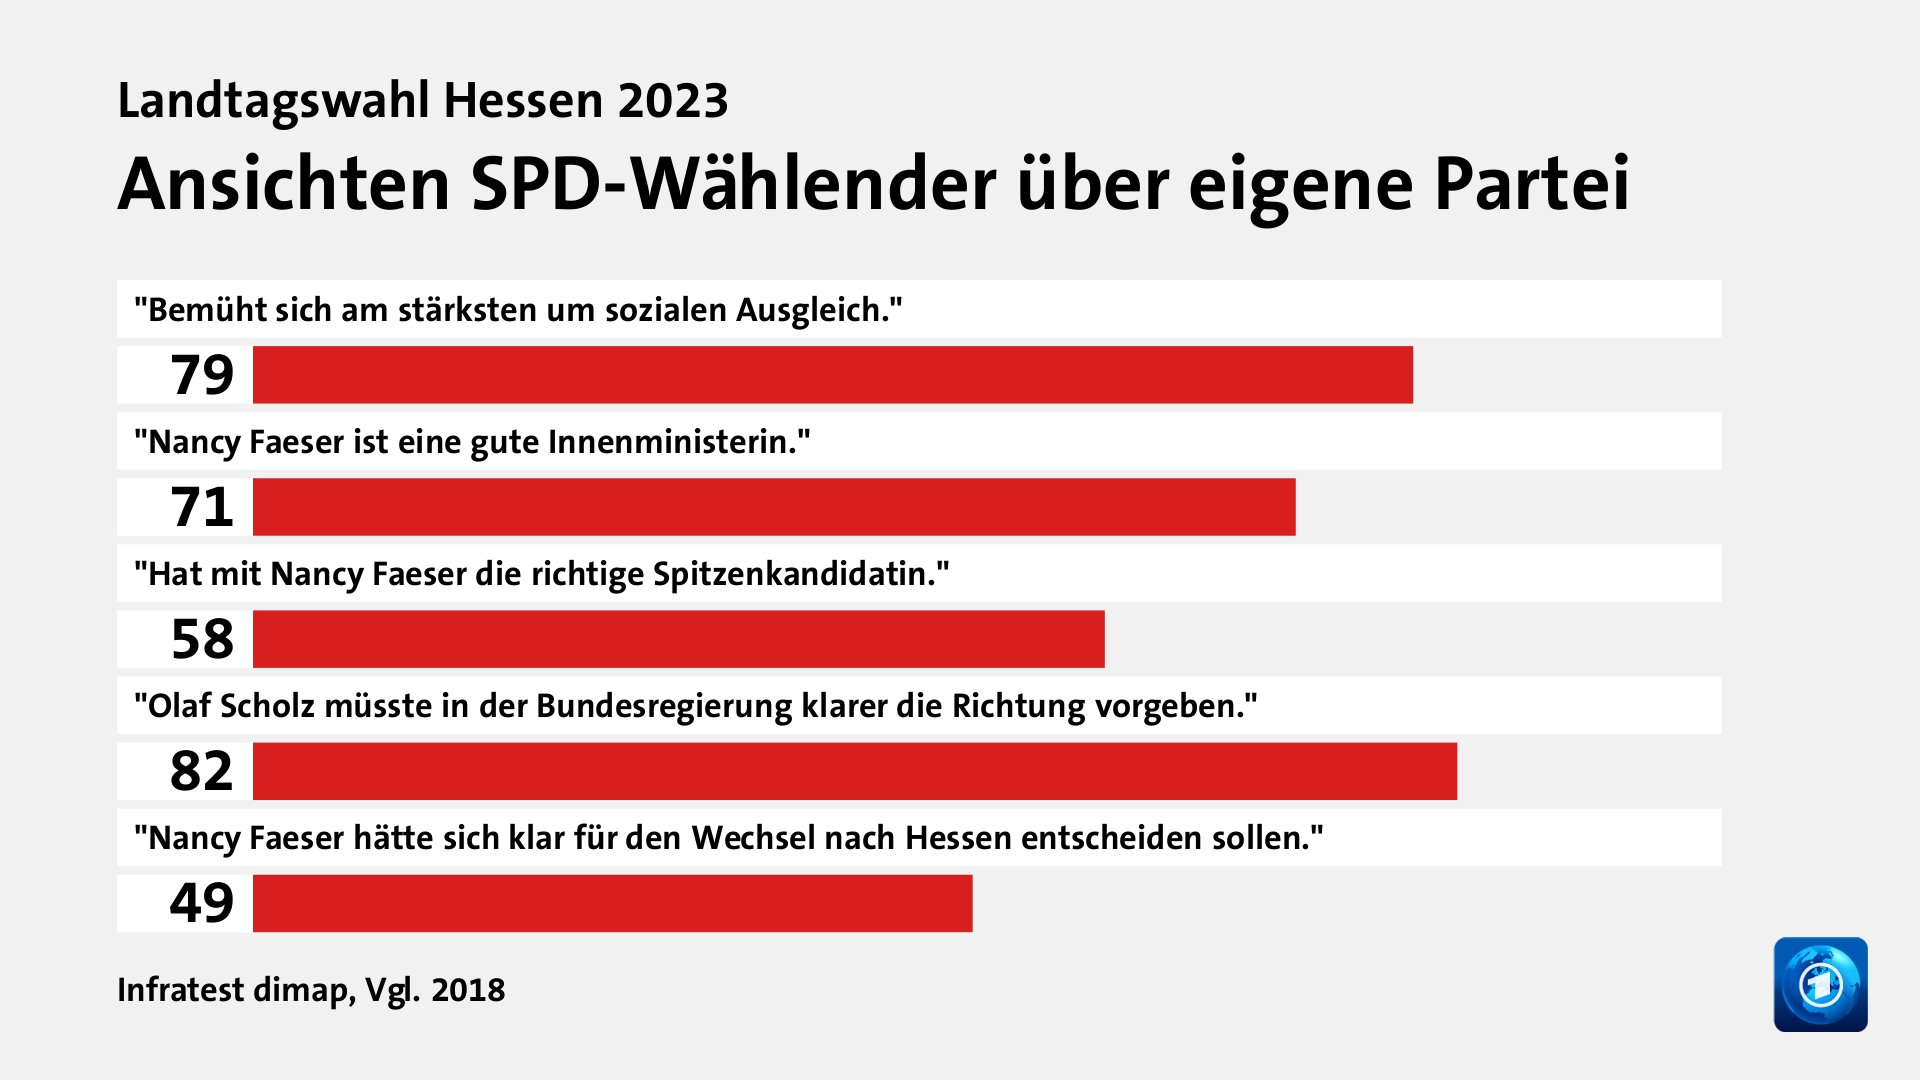 Ansichten SPD-Wählender über eigene Partei, Vgl. 2018: 